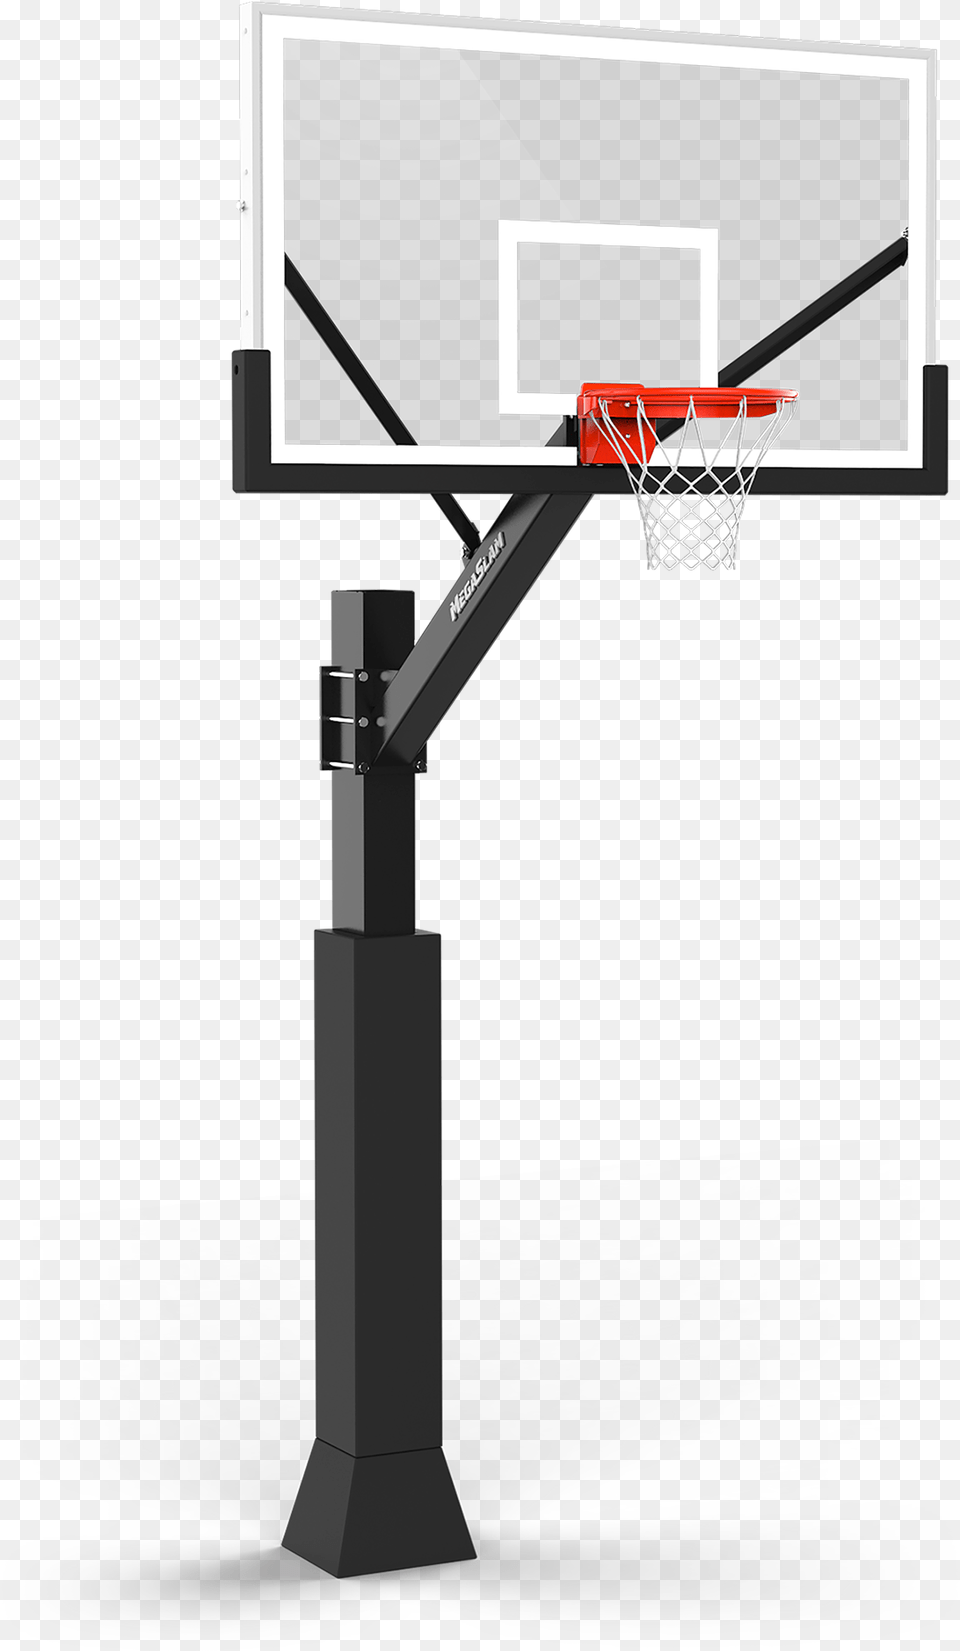 Megaslam Fx 72 Inch Basketball Hoop Megaslam Fx Pro Free Png Download